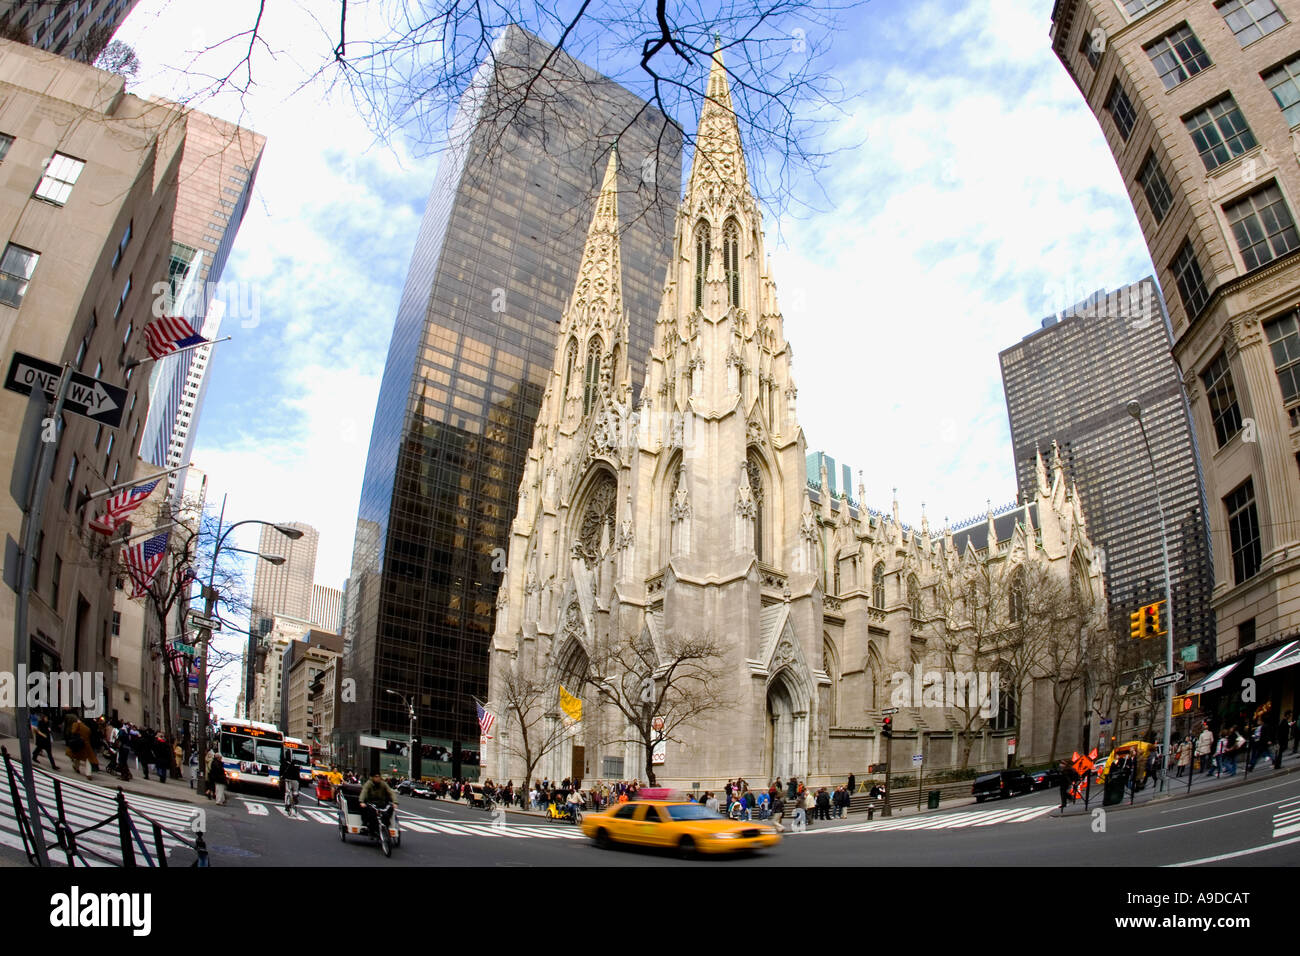 La Catedral de St Patrick y taxi amarillo en la 5ª Quinta Avenida, Manhattan, Nueva York, Ny Estados Unidos de América Foto de stock